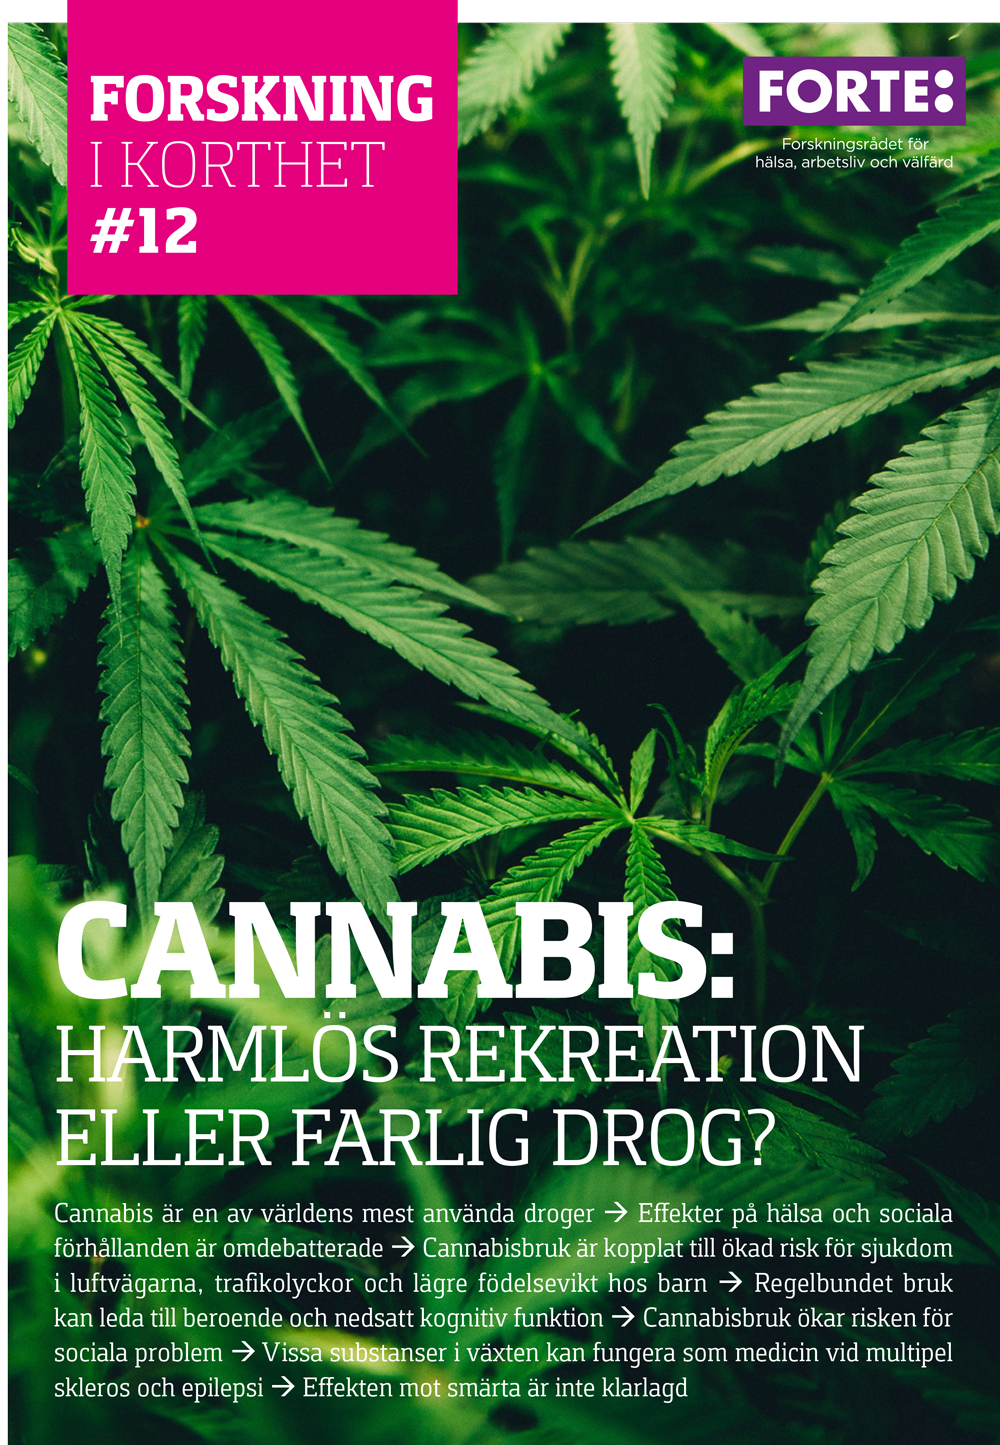 Forskning i korthet: Cannabis – harmlös rekreation eller farlig drog?